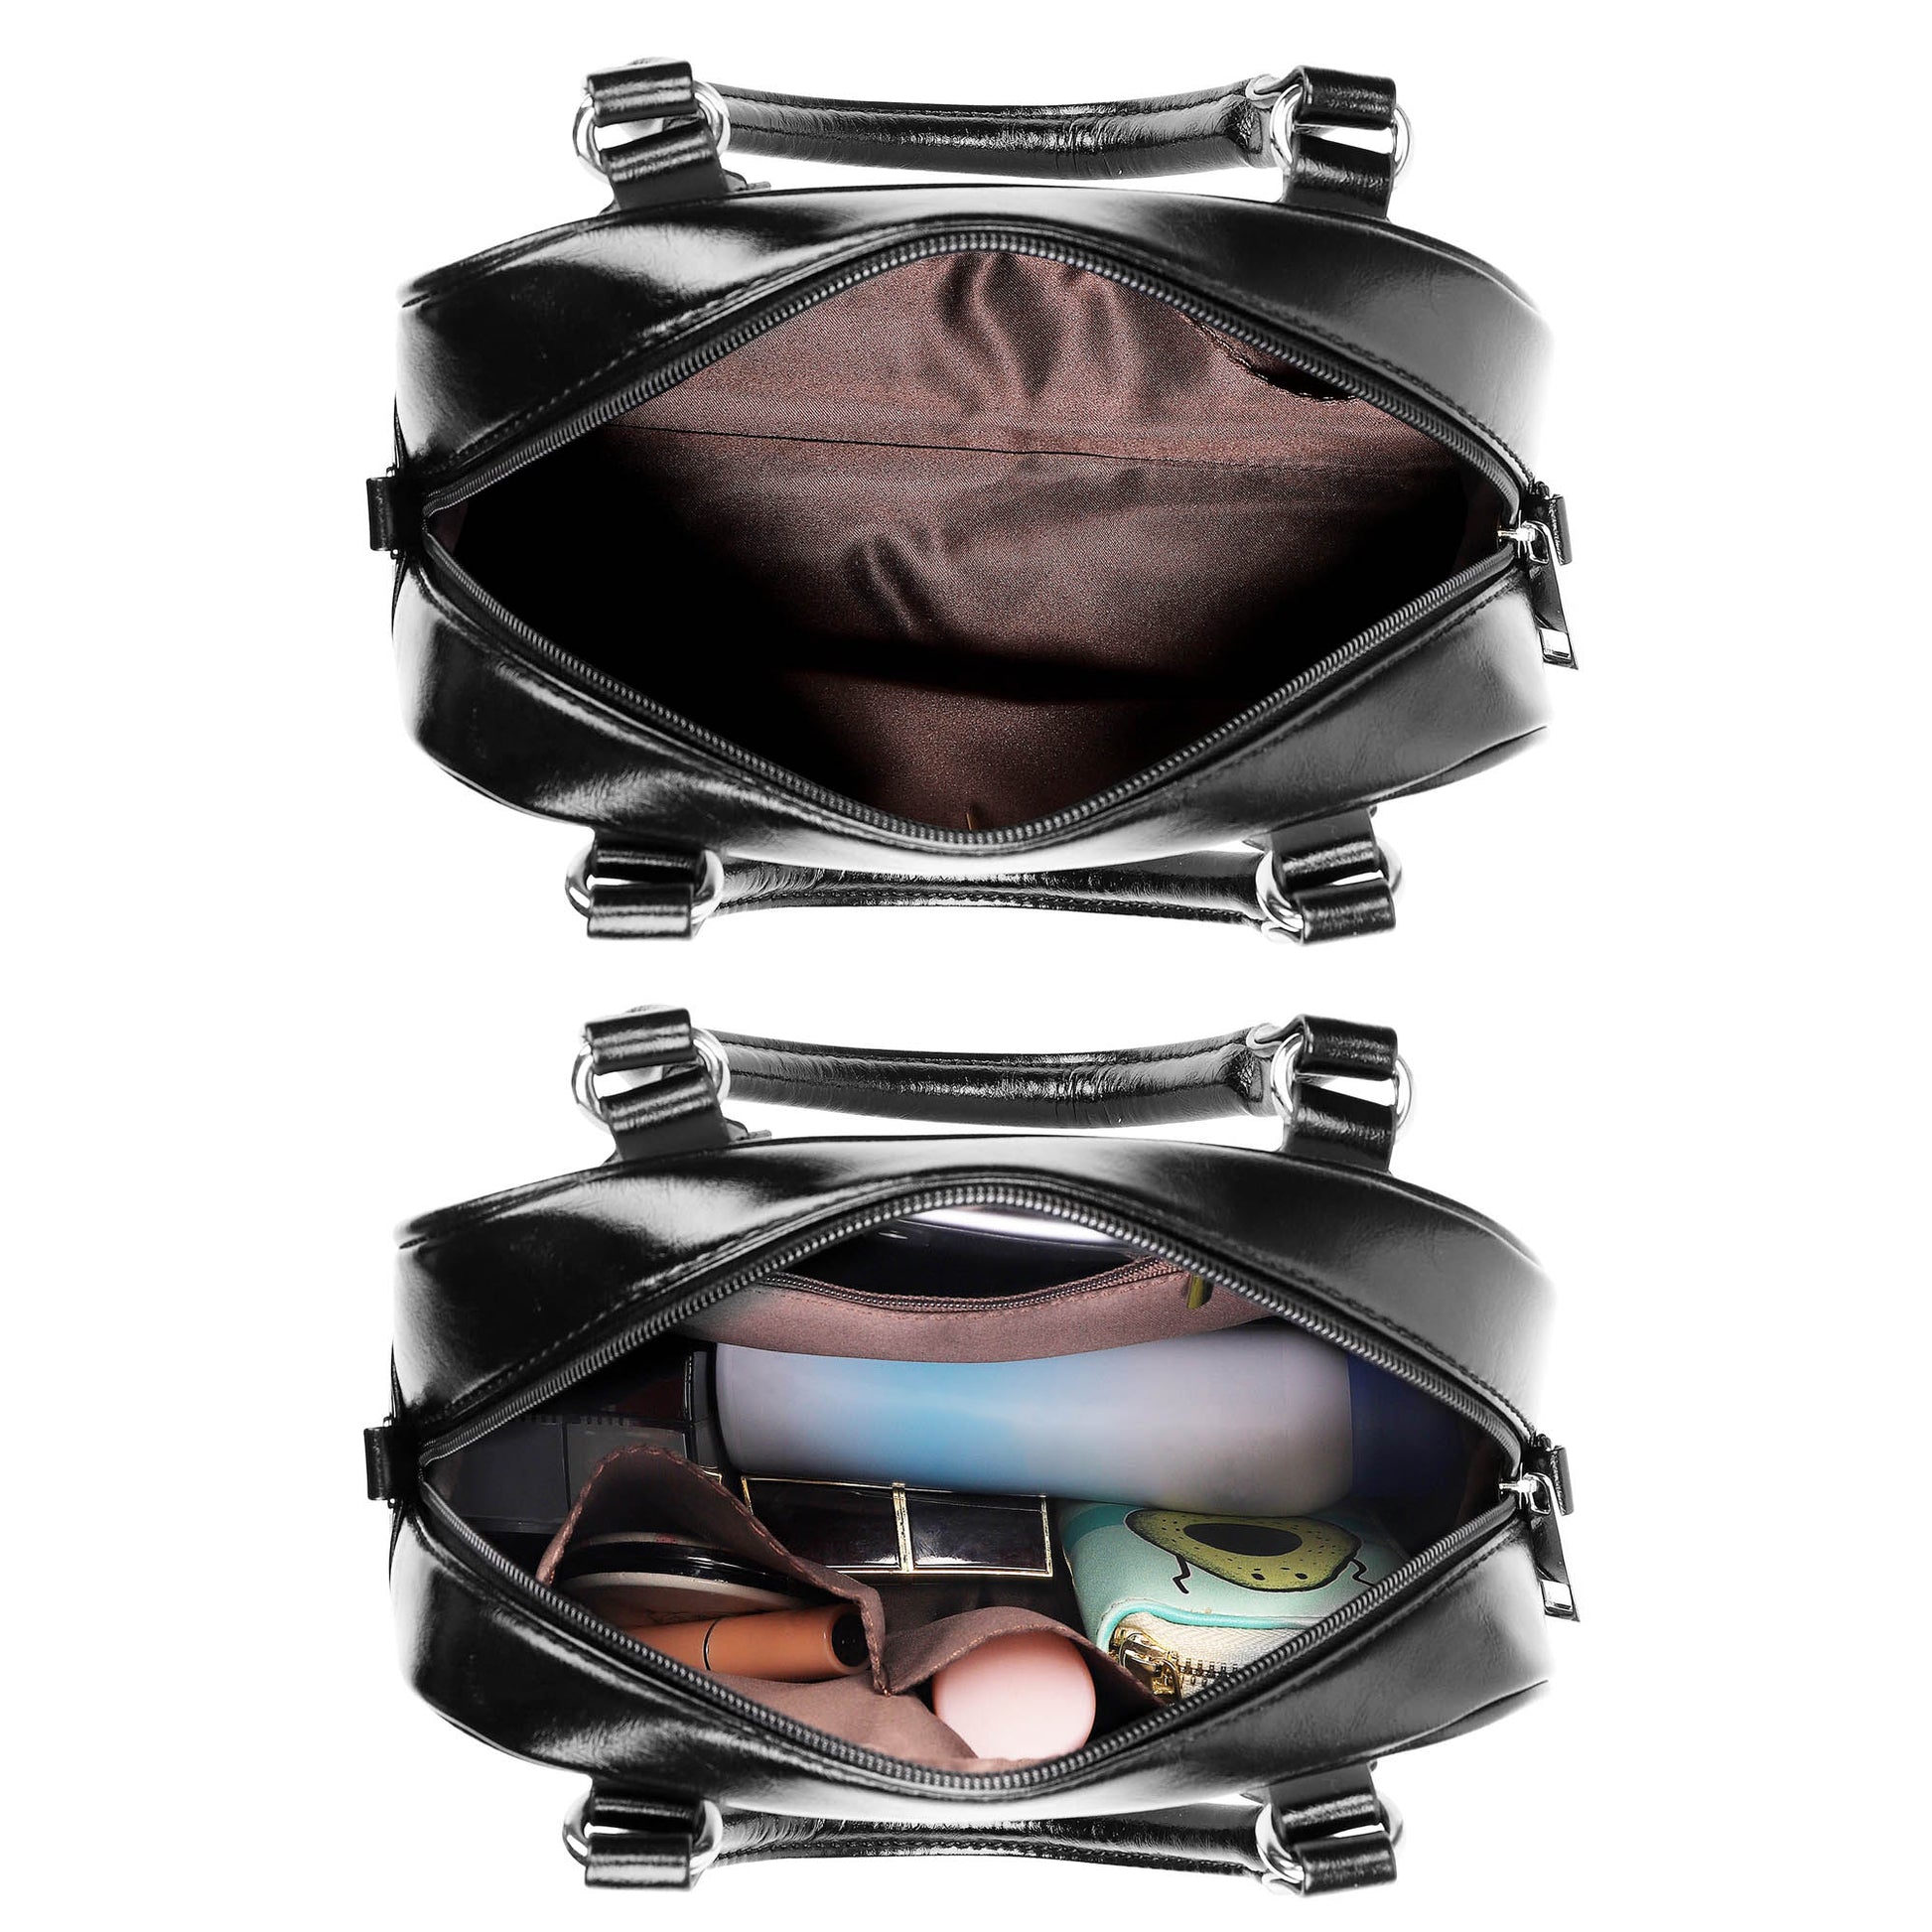 McBrayer Tartan Shoulder Handbags - Tartanvibesclothing